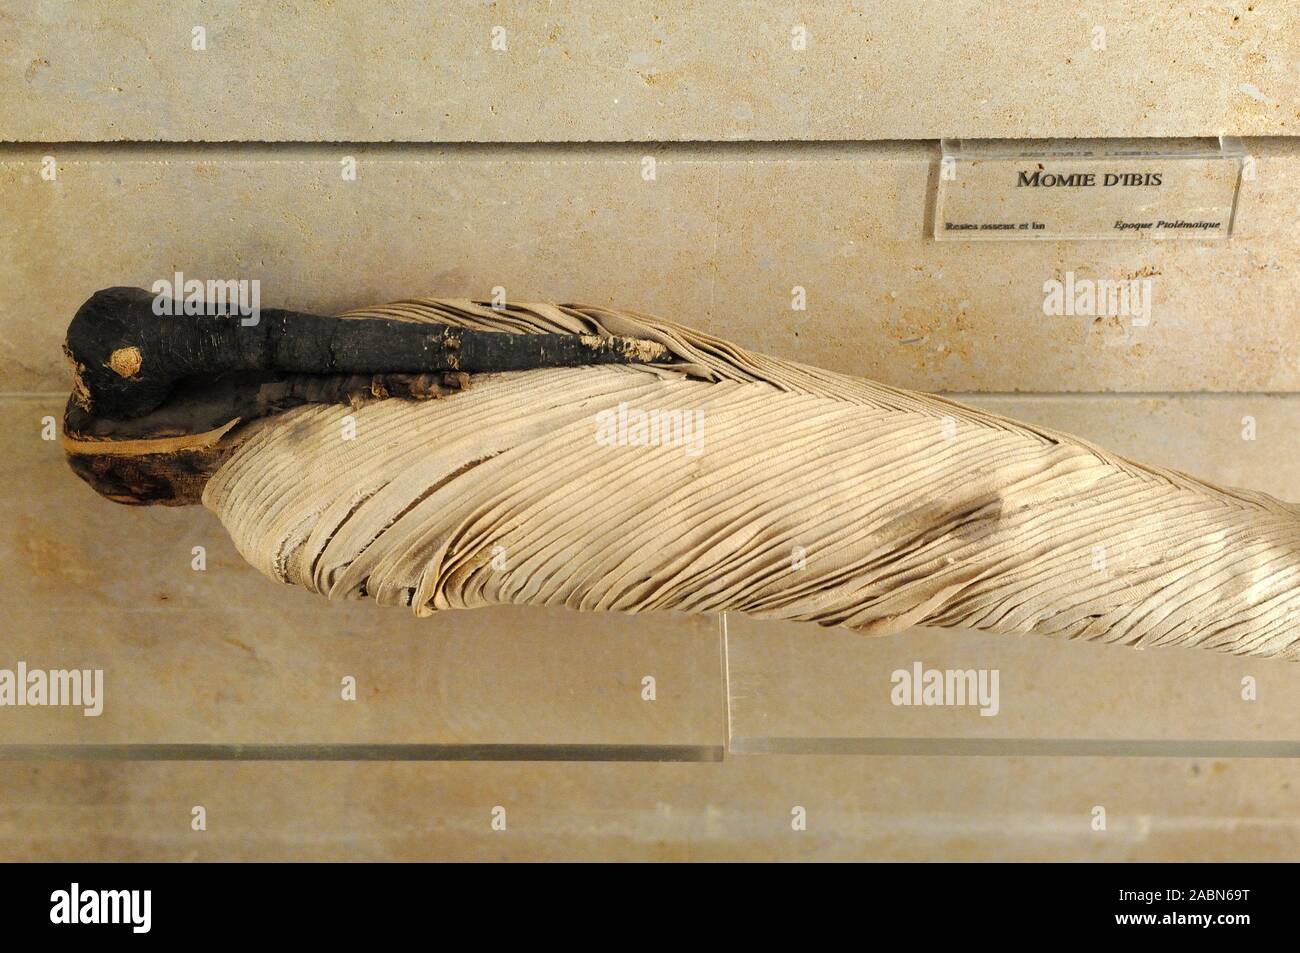 Mummy mummified immagini e fotografie stock ad alta risoluzione - Alamy